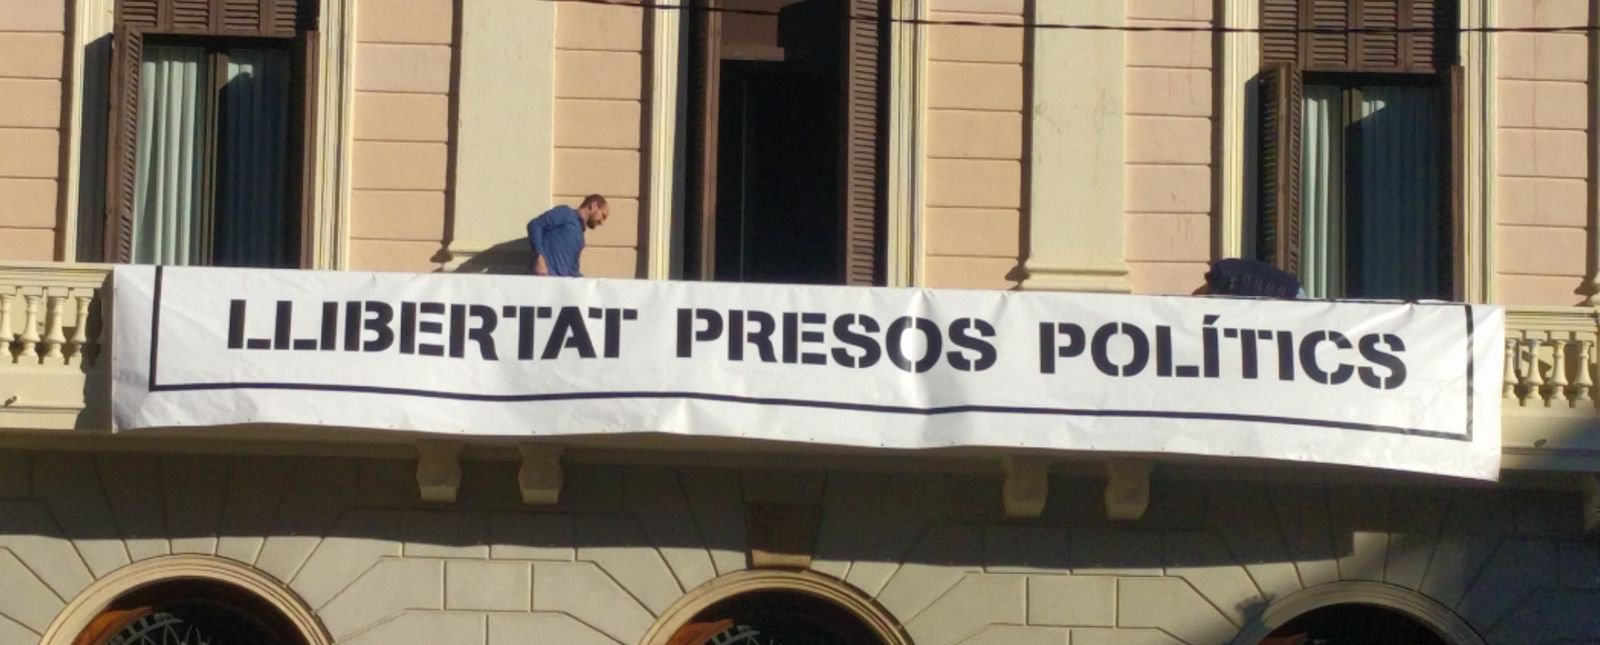 Un trabajador del ayuntamiento colocando la pancarta del ayuntamiento de Sabadell.